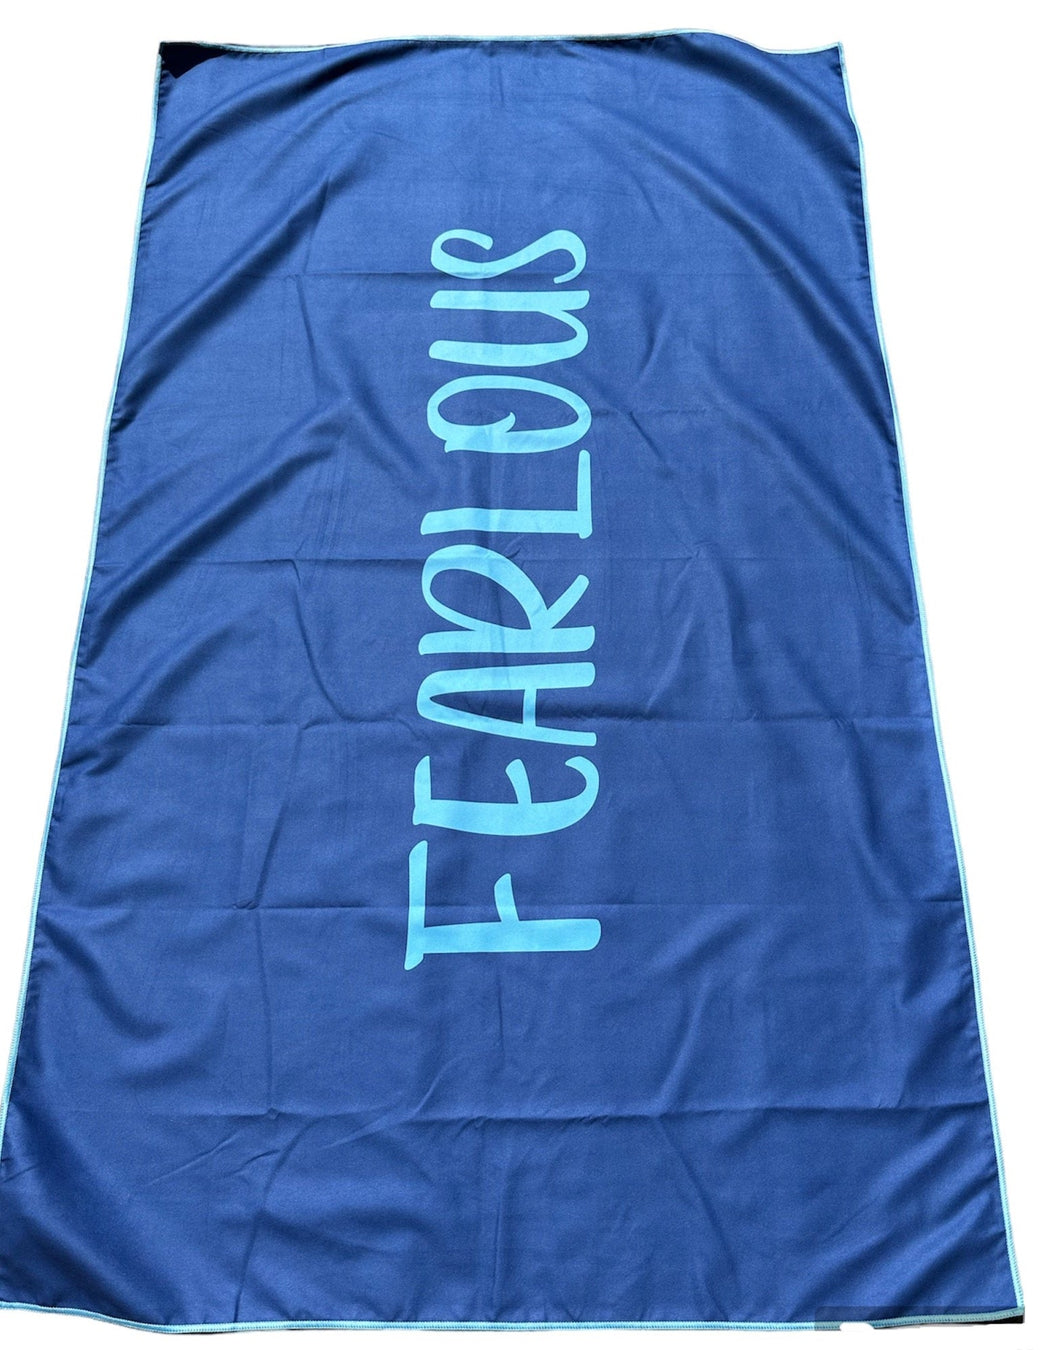 FEARLOUS Micro Fibre Towel - Navy/Aqua Blue